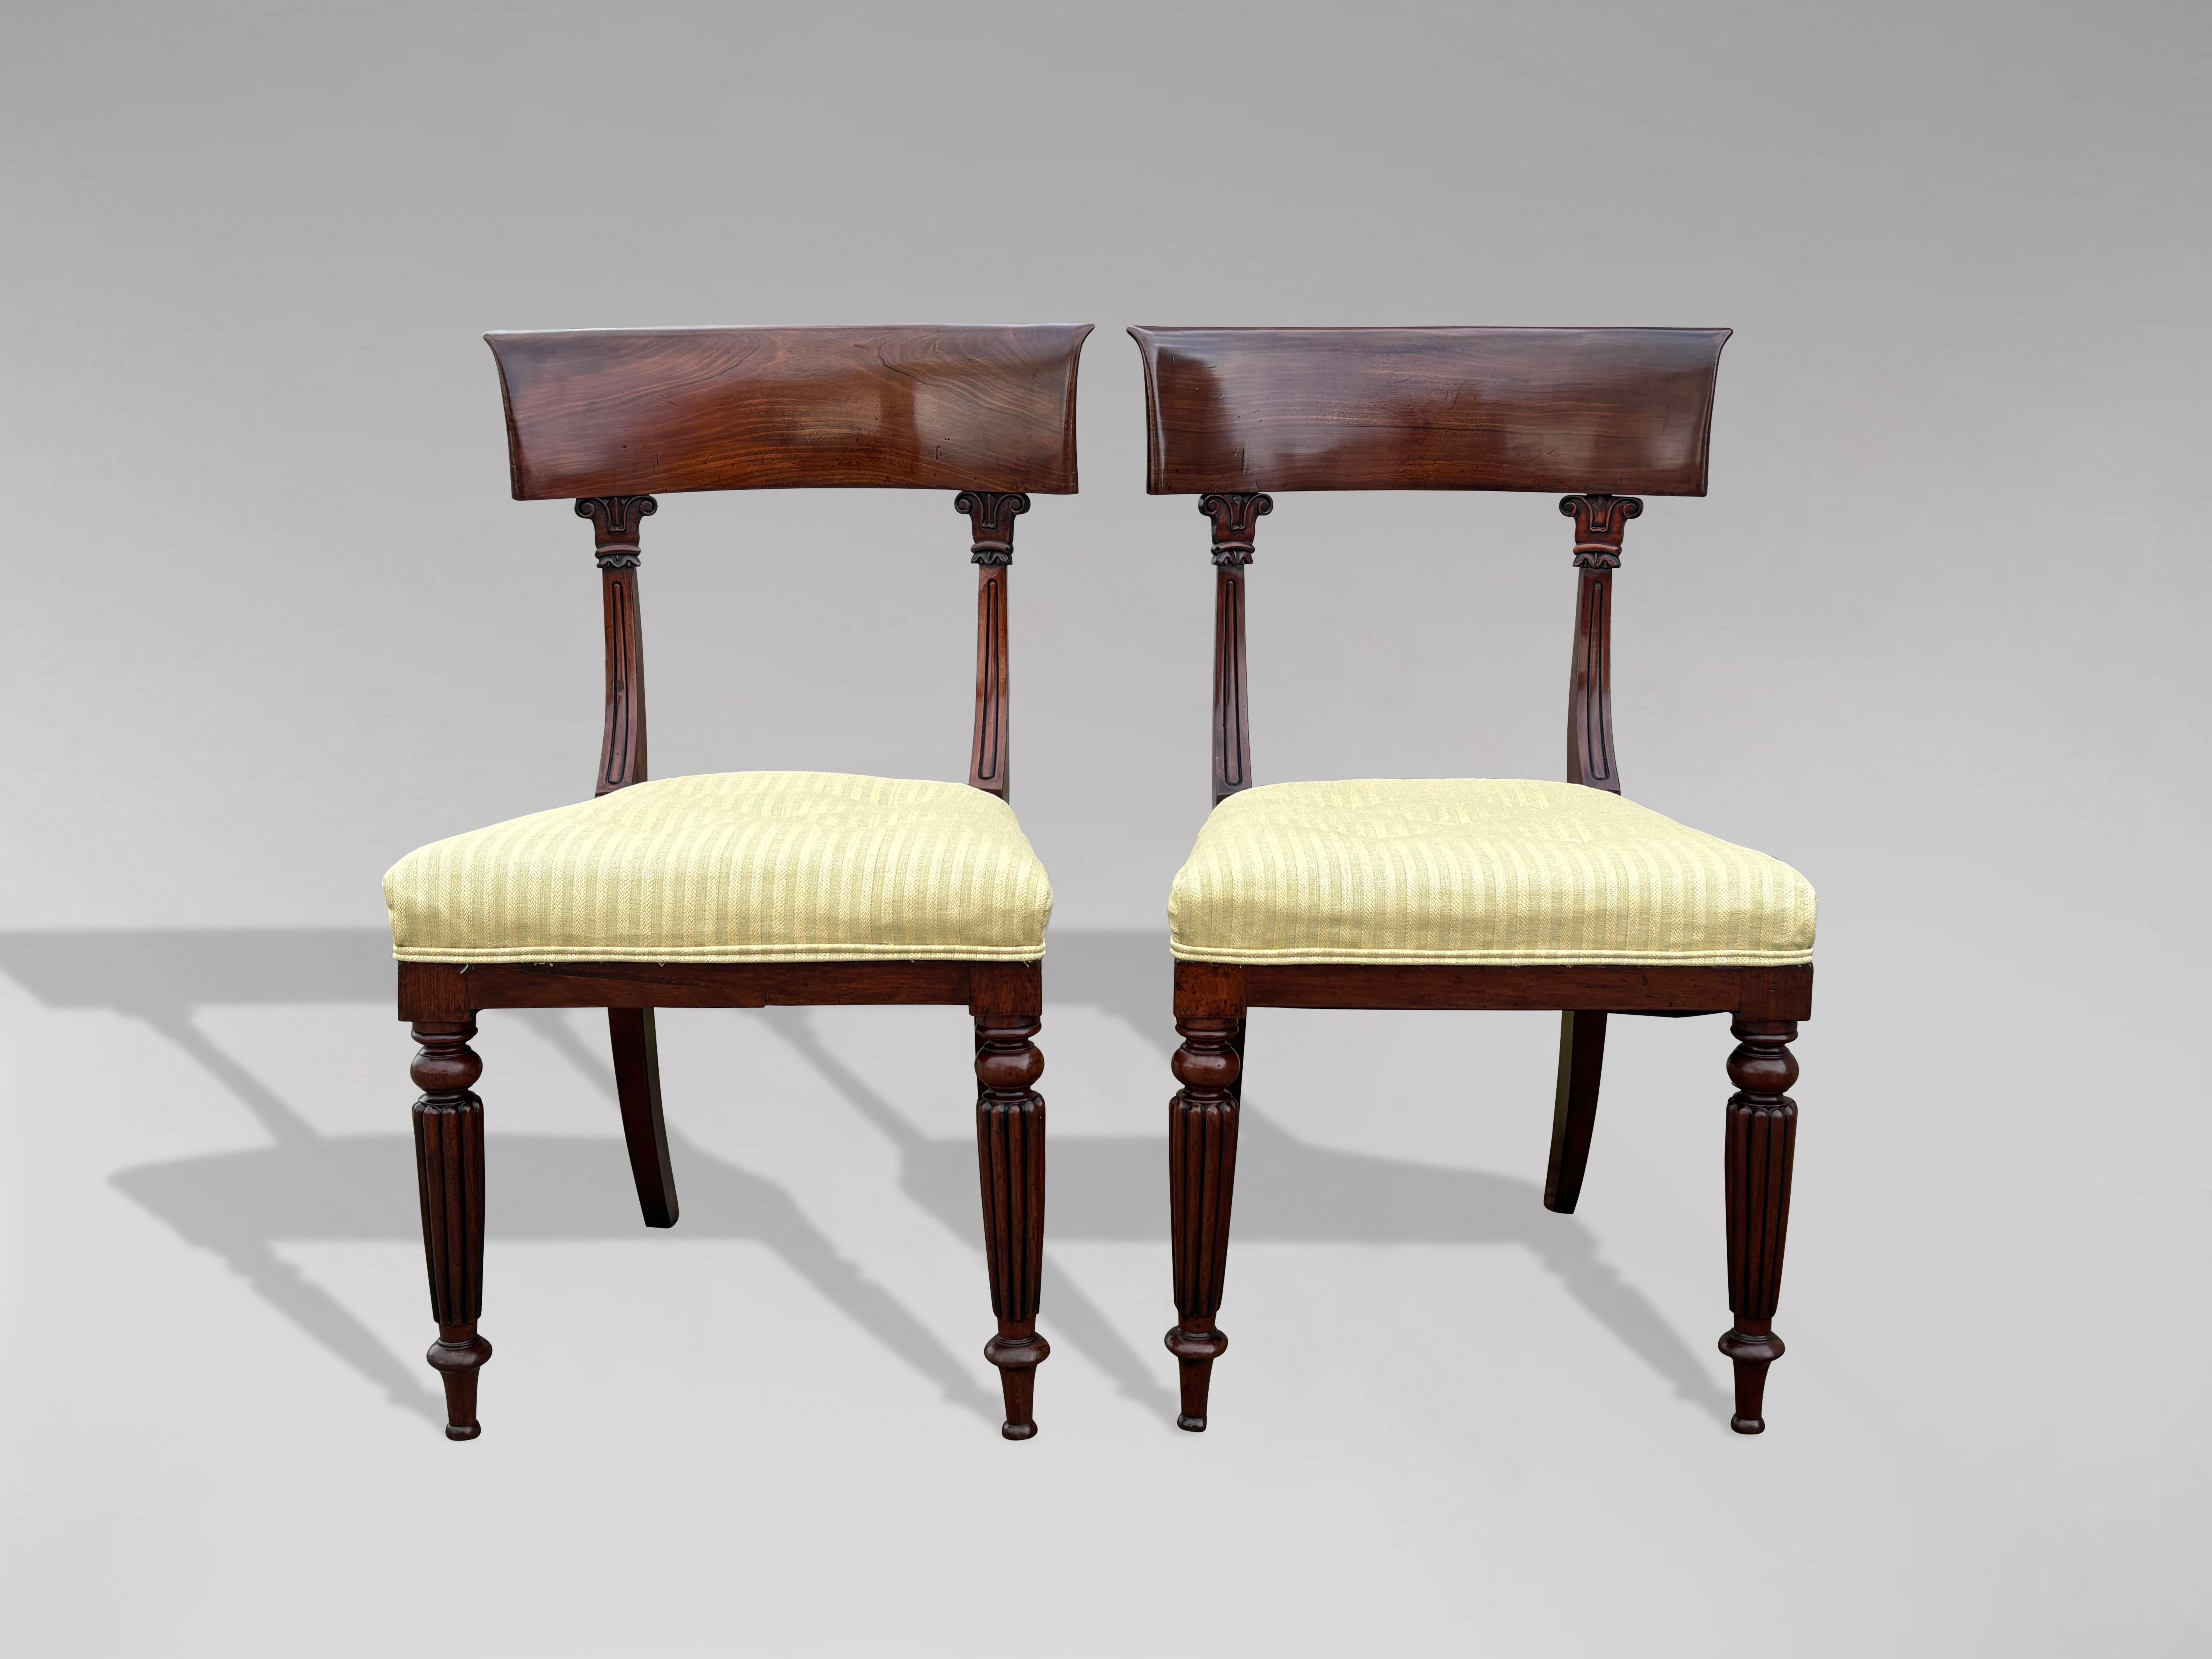 Paire de chaises d'appoint en acajou massif d'époque William IV du XIXe siècle, en excellent état, dont les sièges ont été récemment tapissés. Ces chaises robustes sont dotées d'un dossier incurvé et attrayant, relié à des supports verticaux en